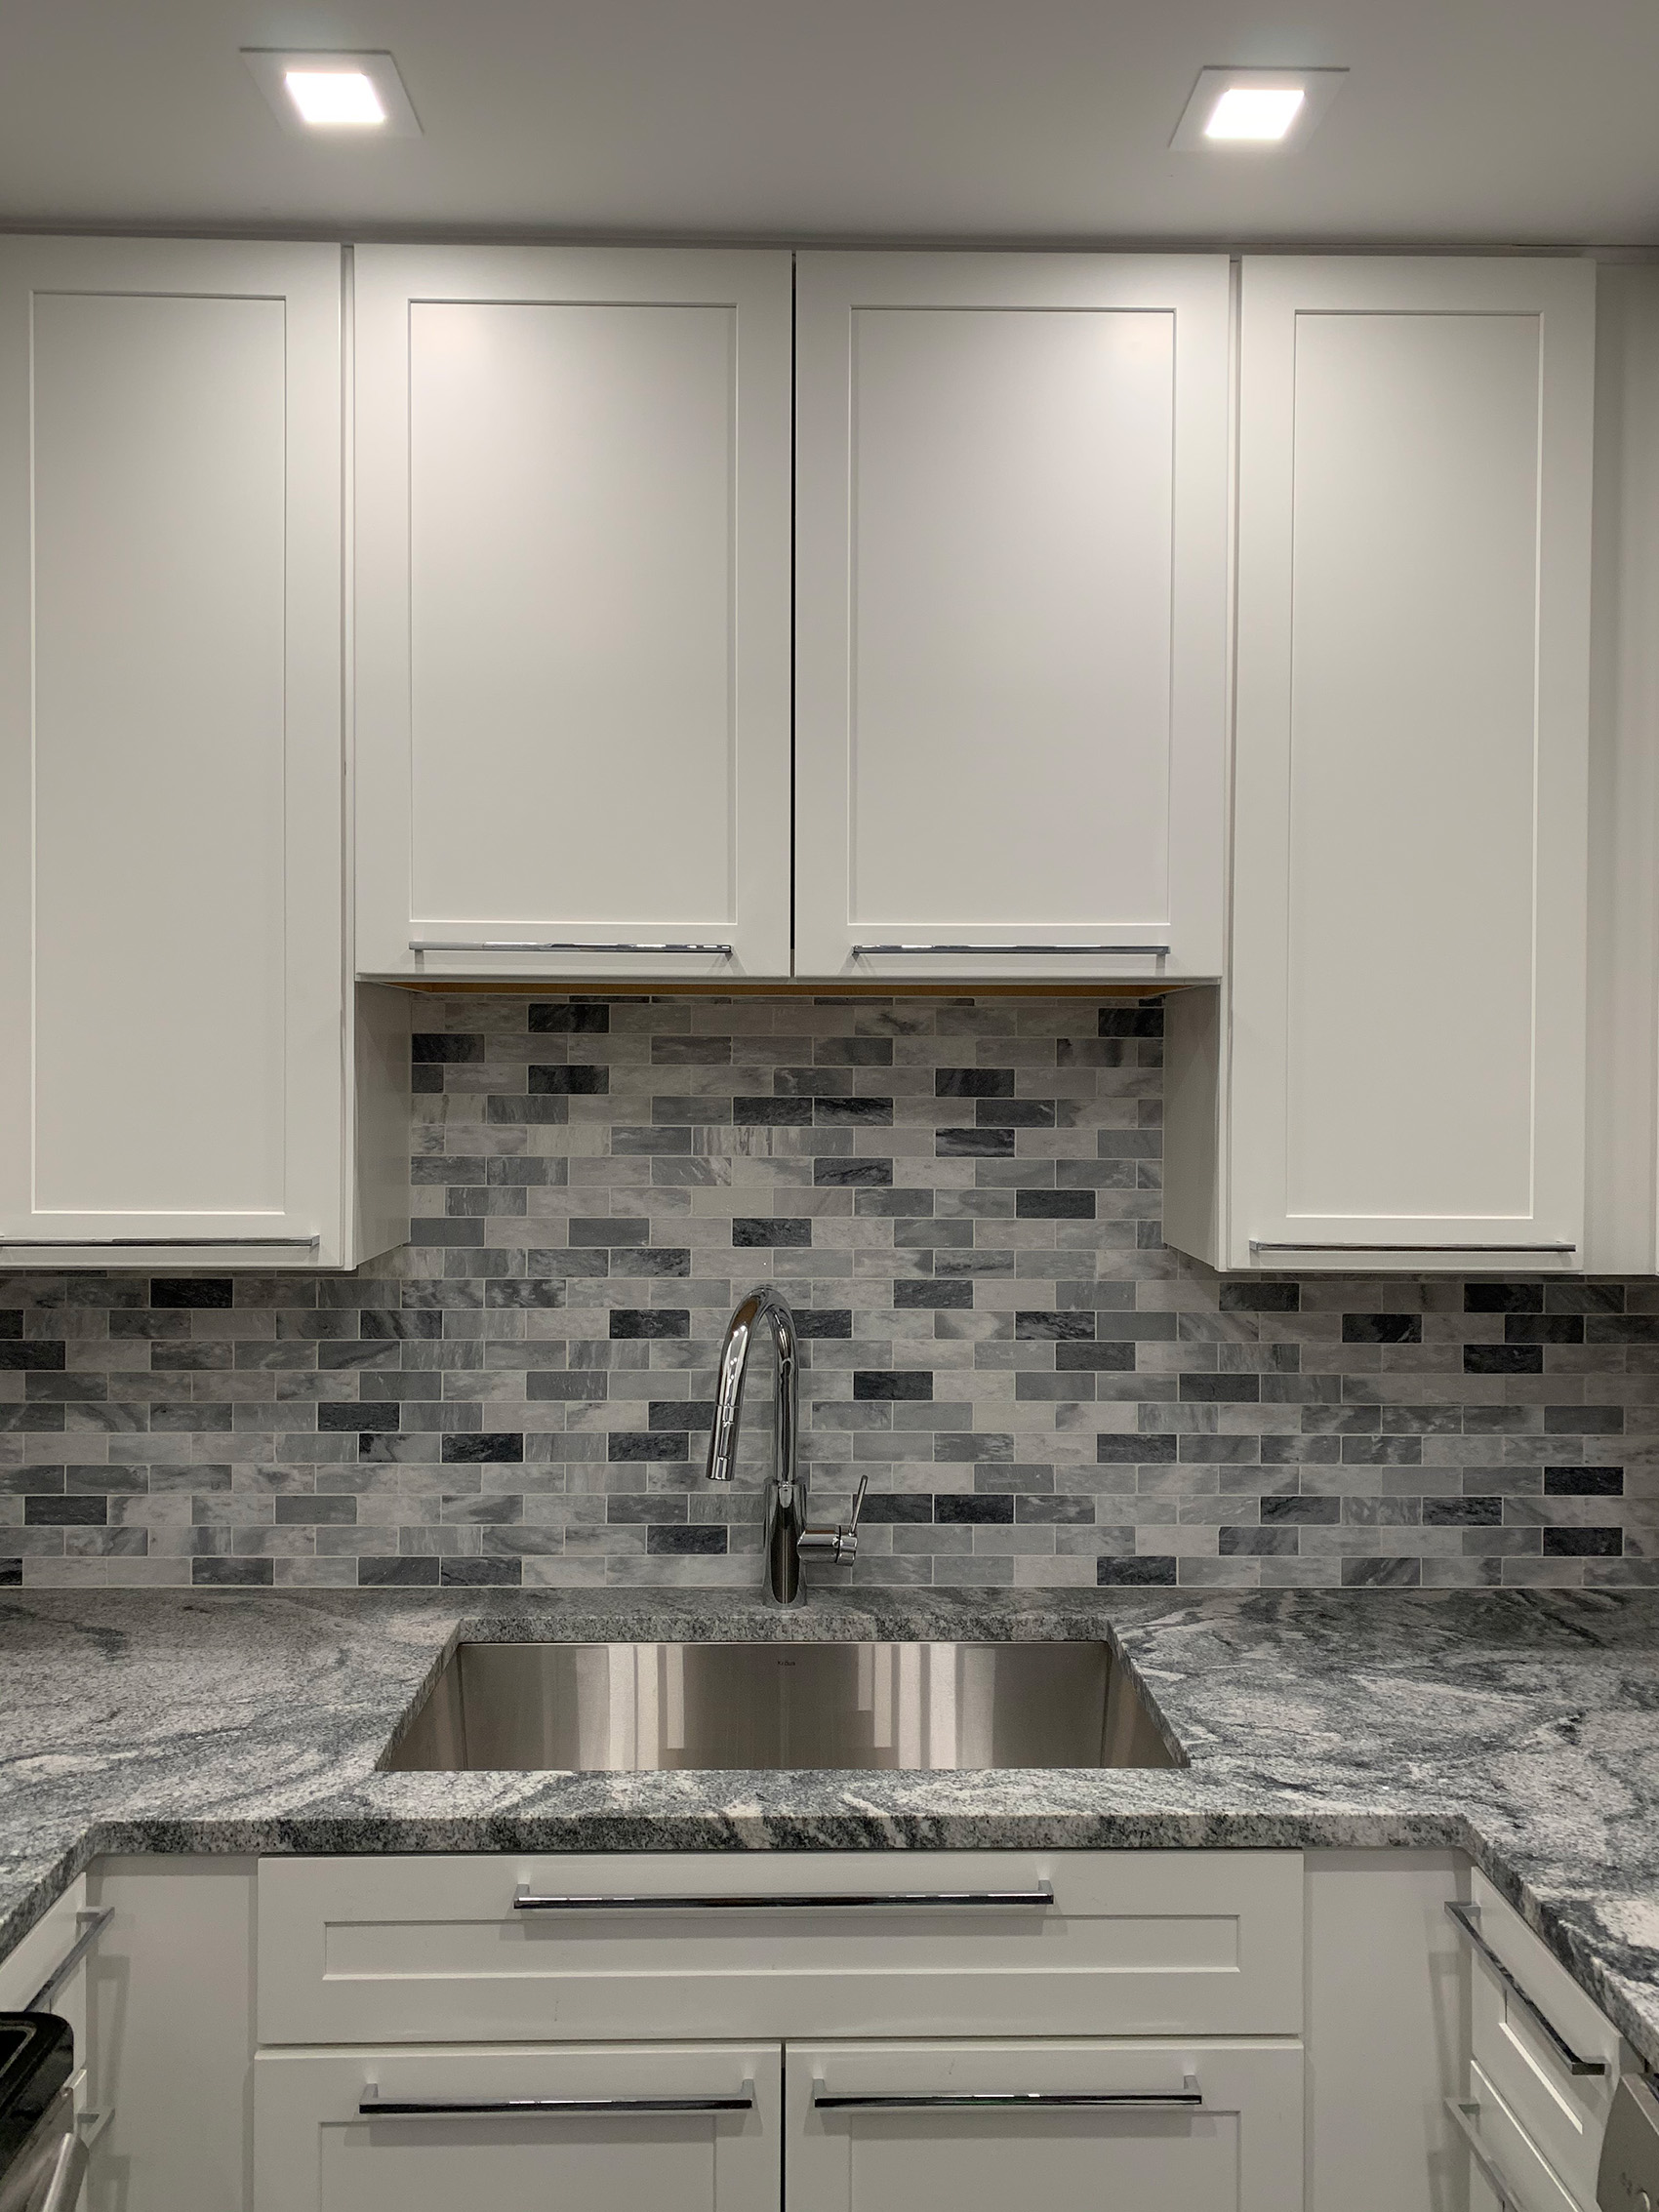 Kitchen tile backsplash and countertop remodel.